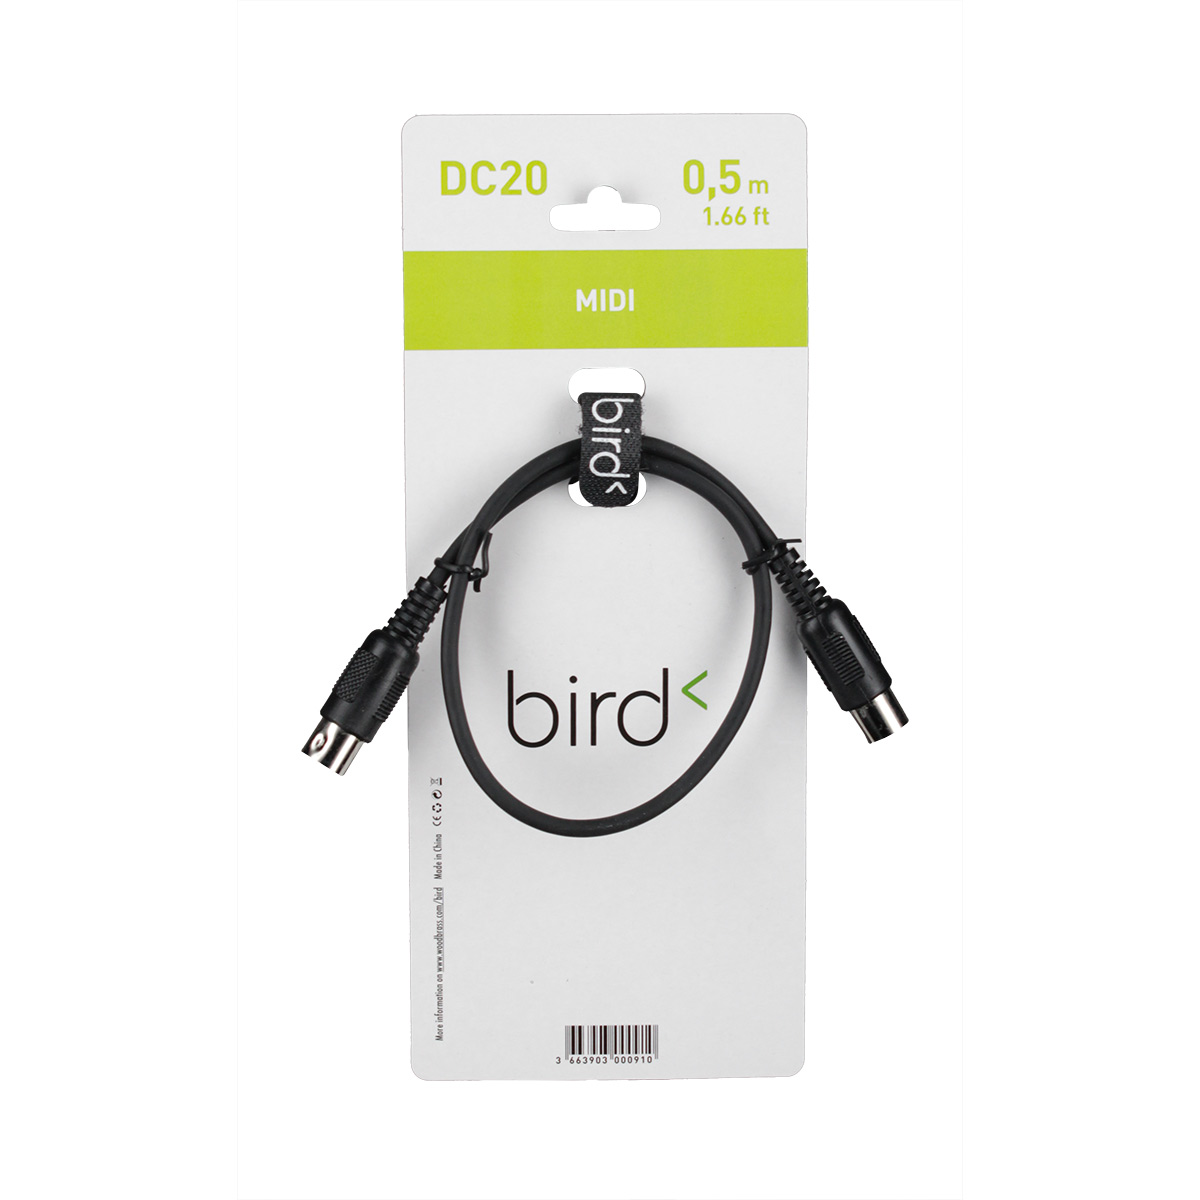 BIRD DC20 - MIDI - 50CM